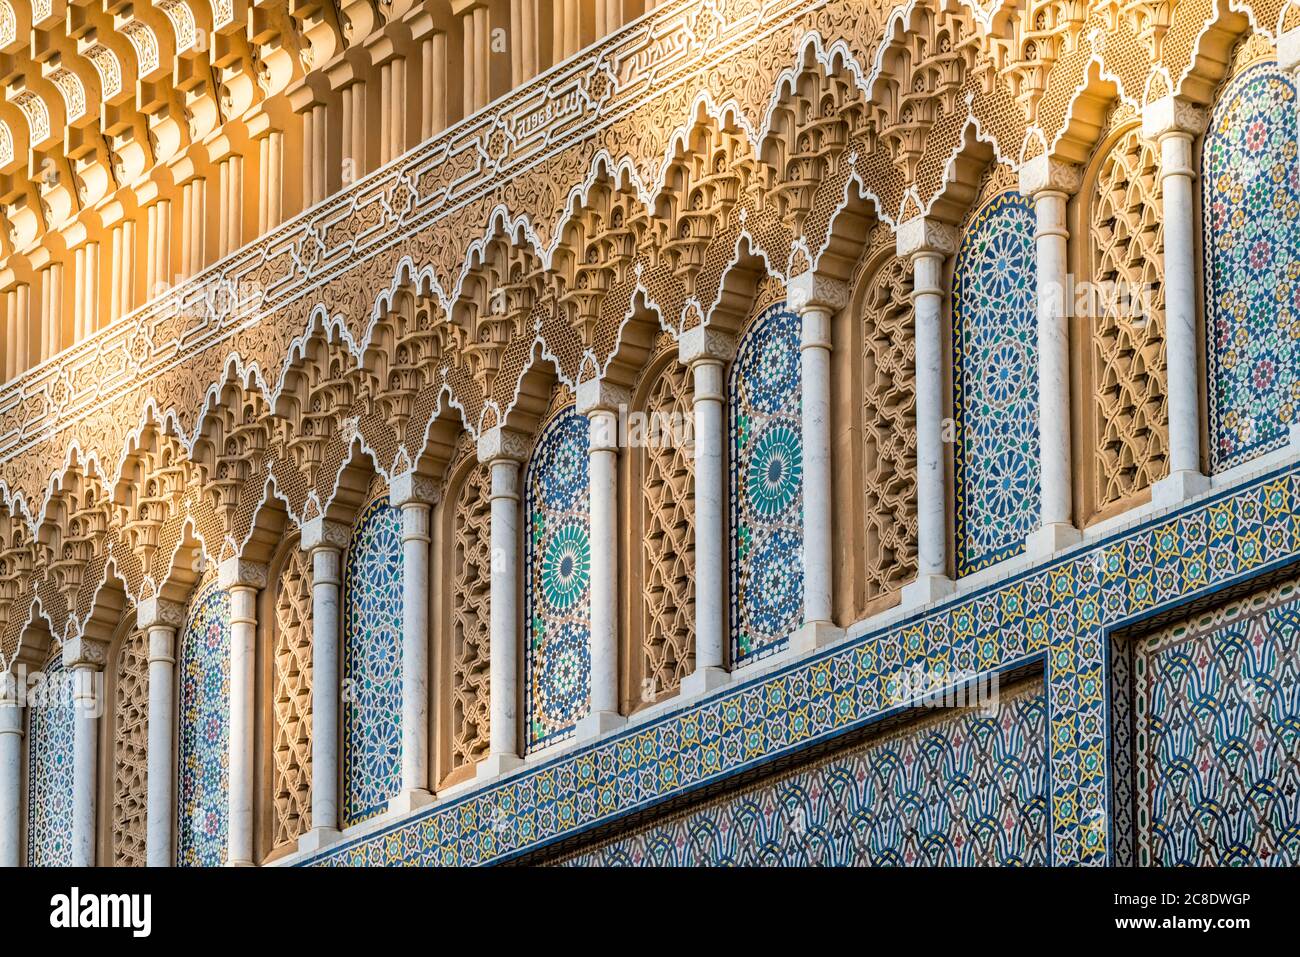 Marocco, Fes-Meknes, Fes, porta ornata del palazzo Dar al-Makhzen Foto Stock